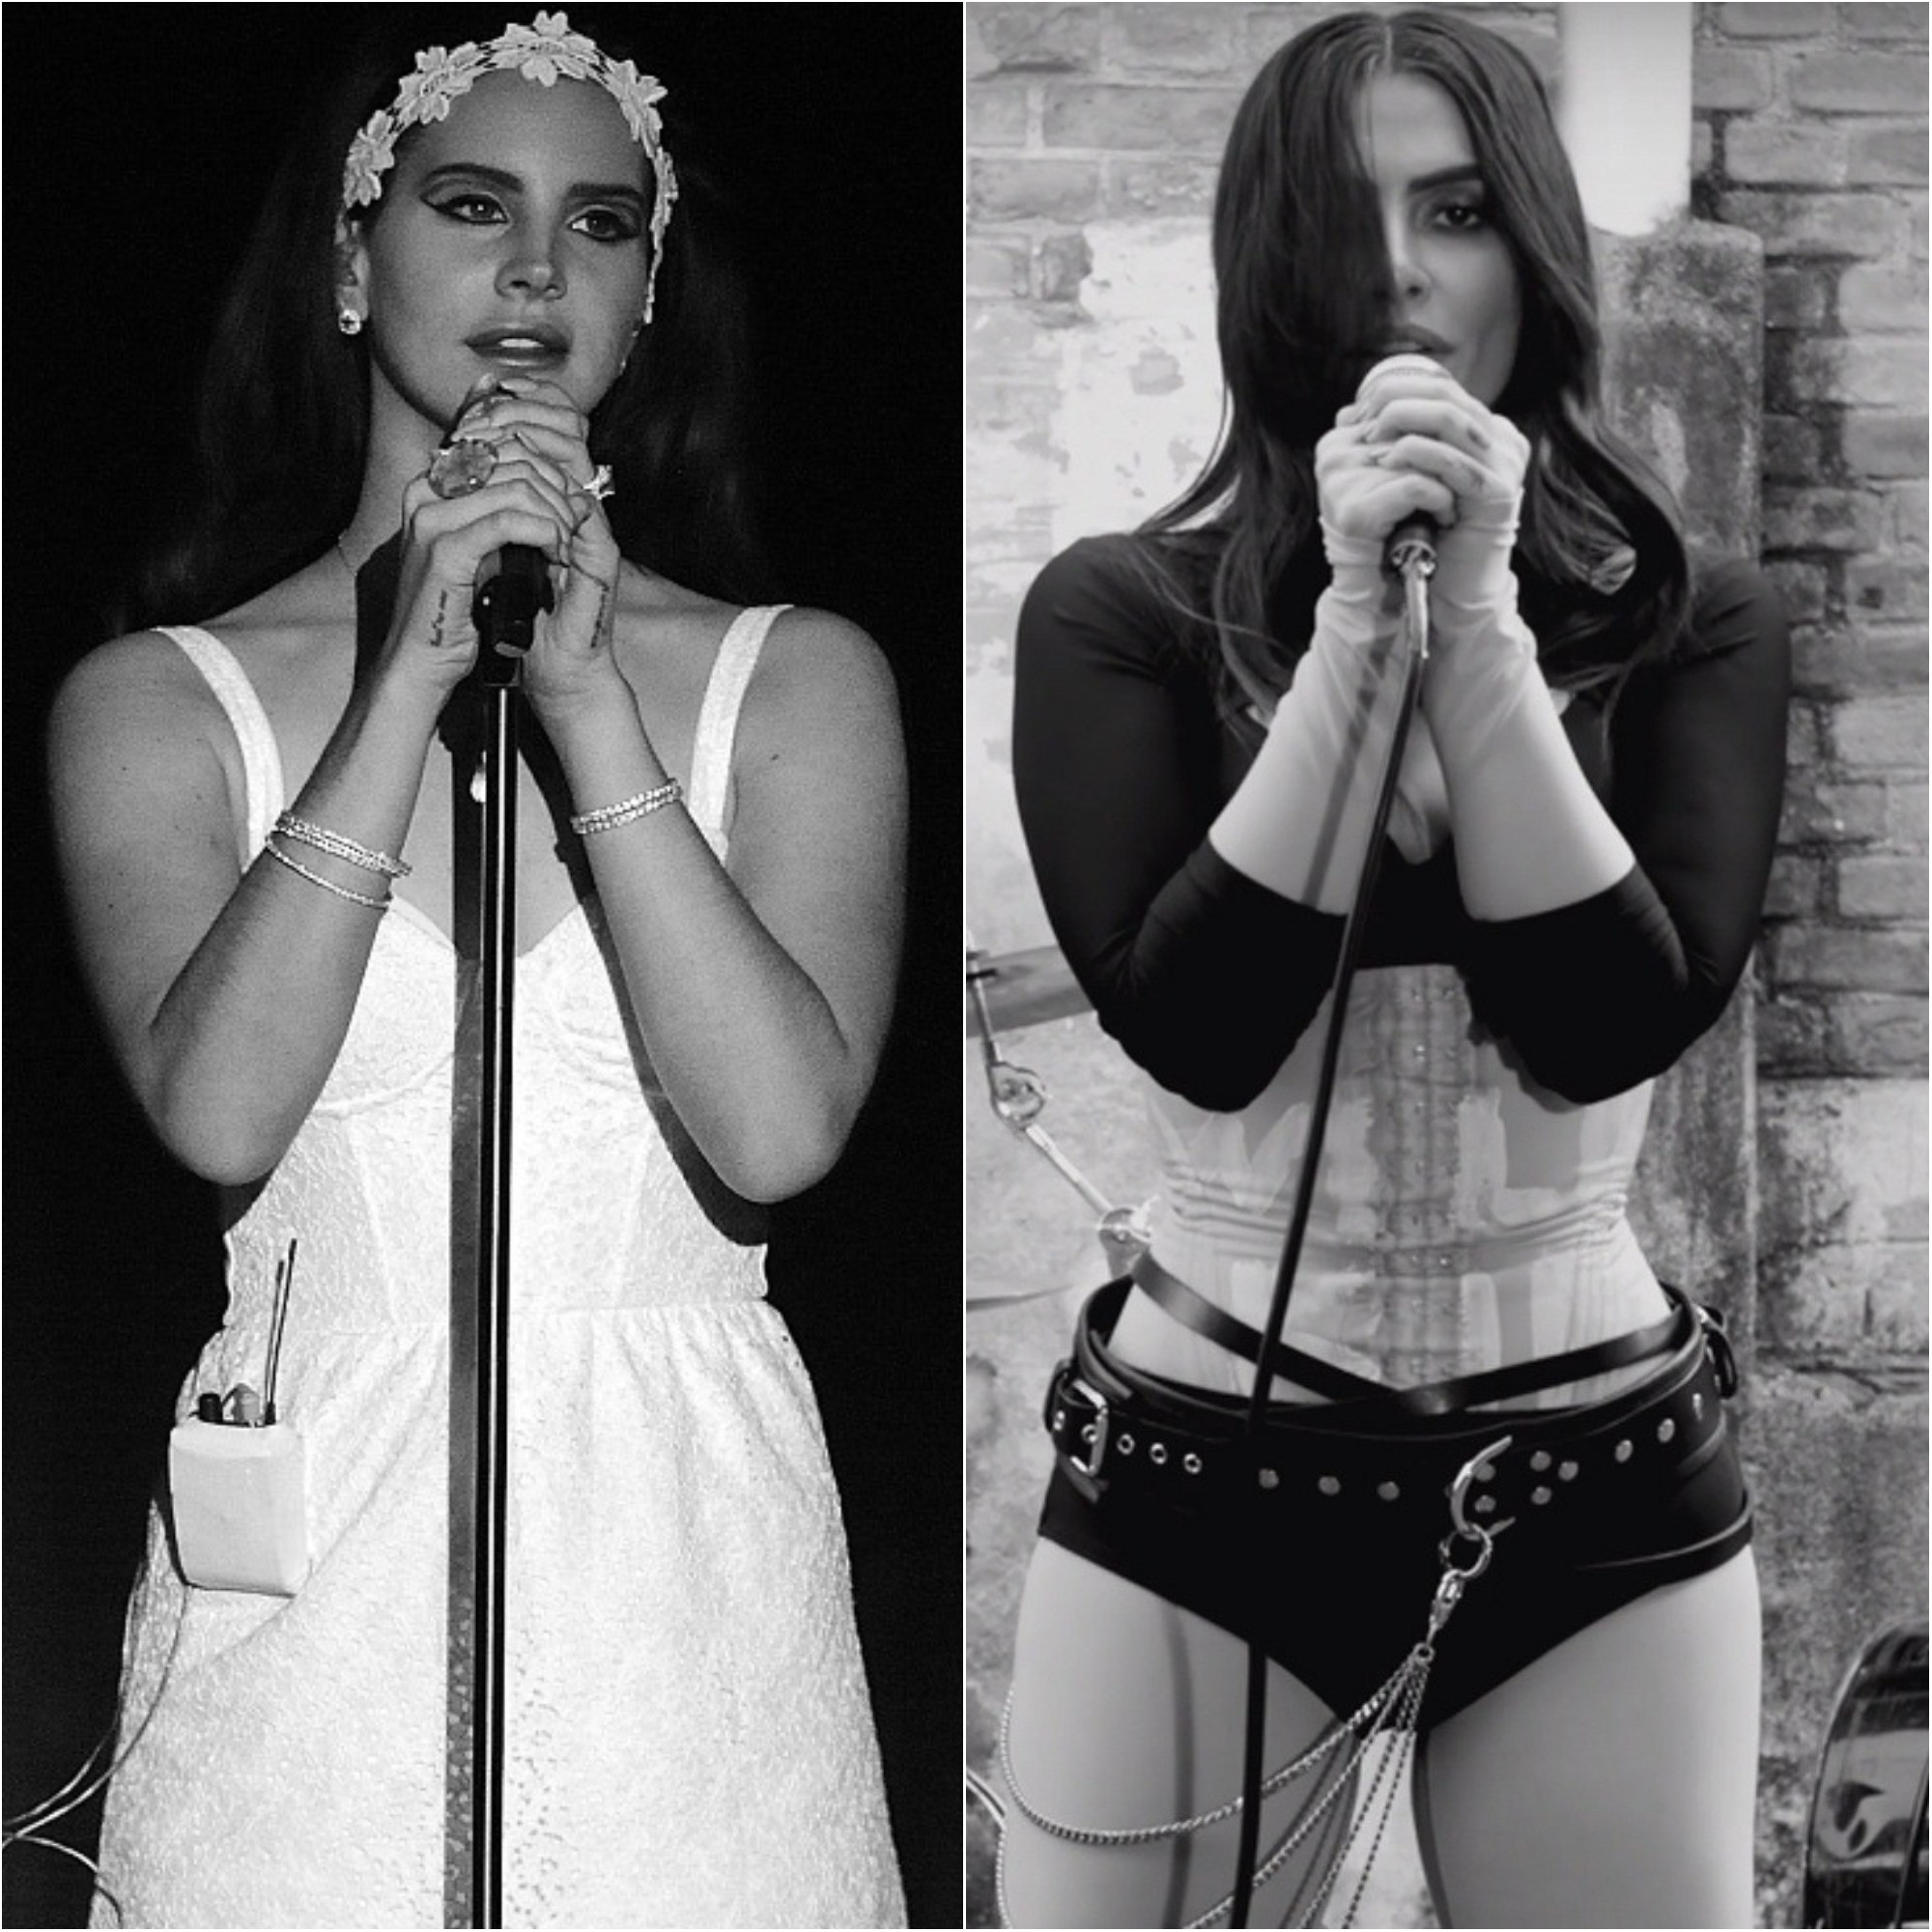 Cleo é comparada a Lana Del rey em novo clipe (Foto: Reprodução Instagram / Getty Images )